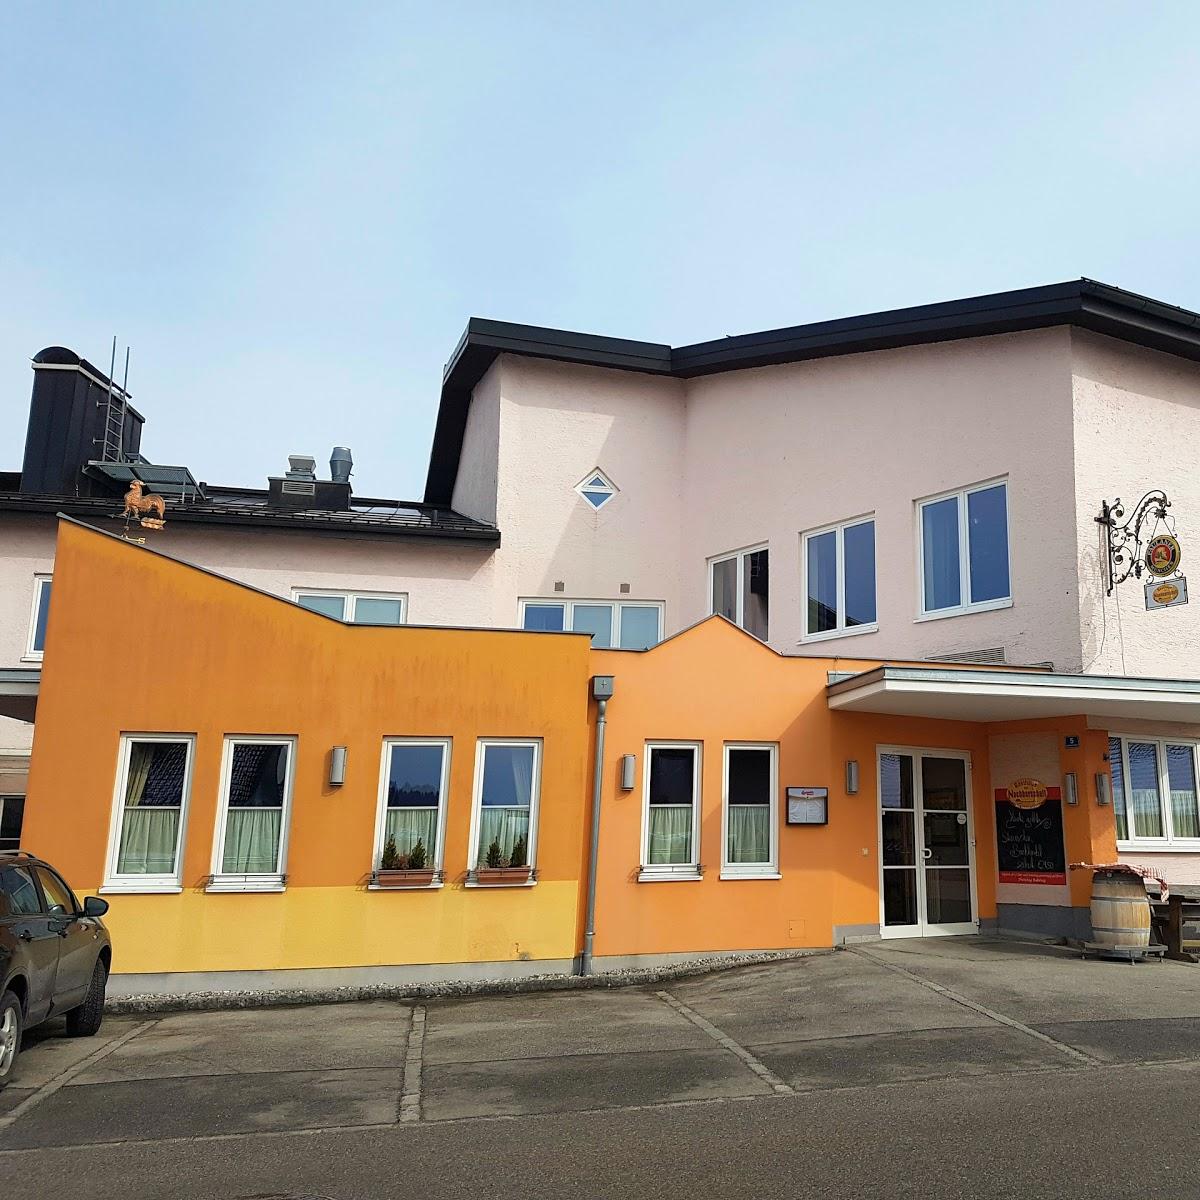 Restaurant "Gasthaus zur Nachbarschaft" in Elixhausen